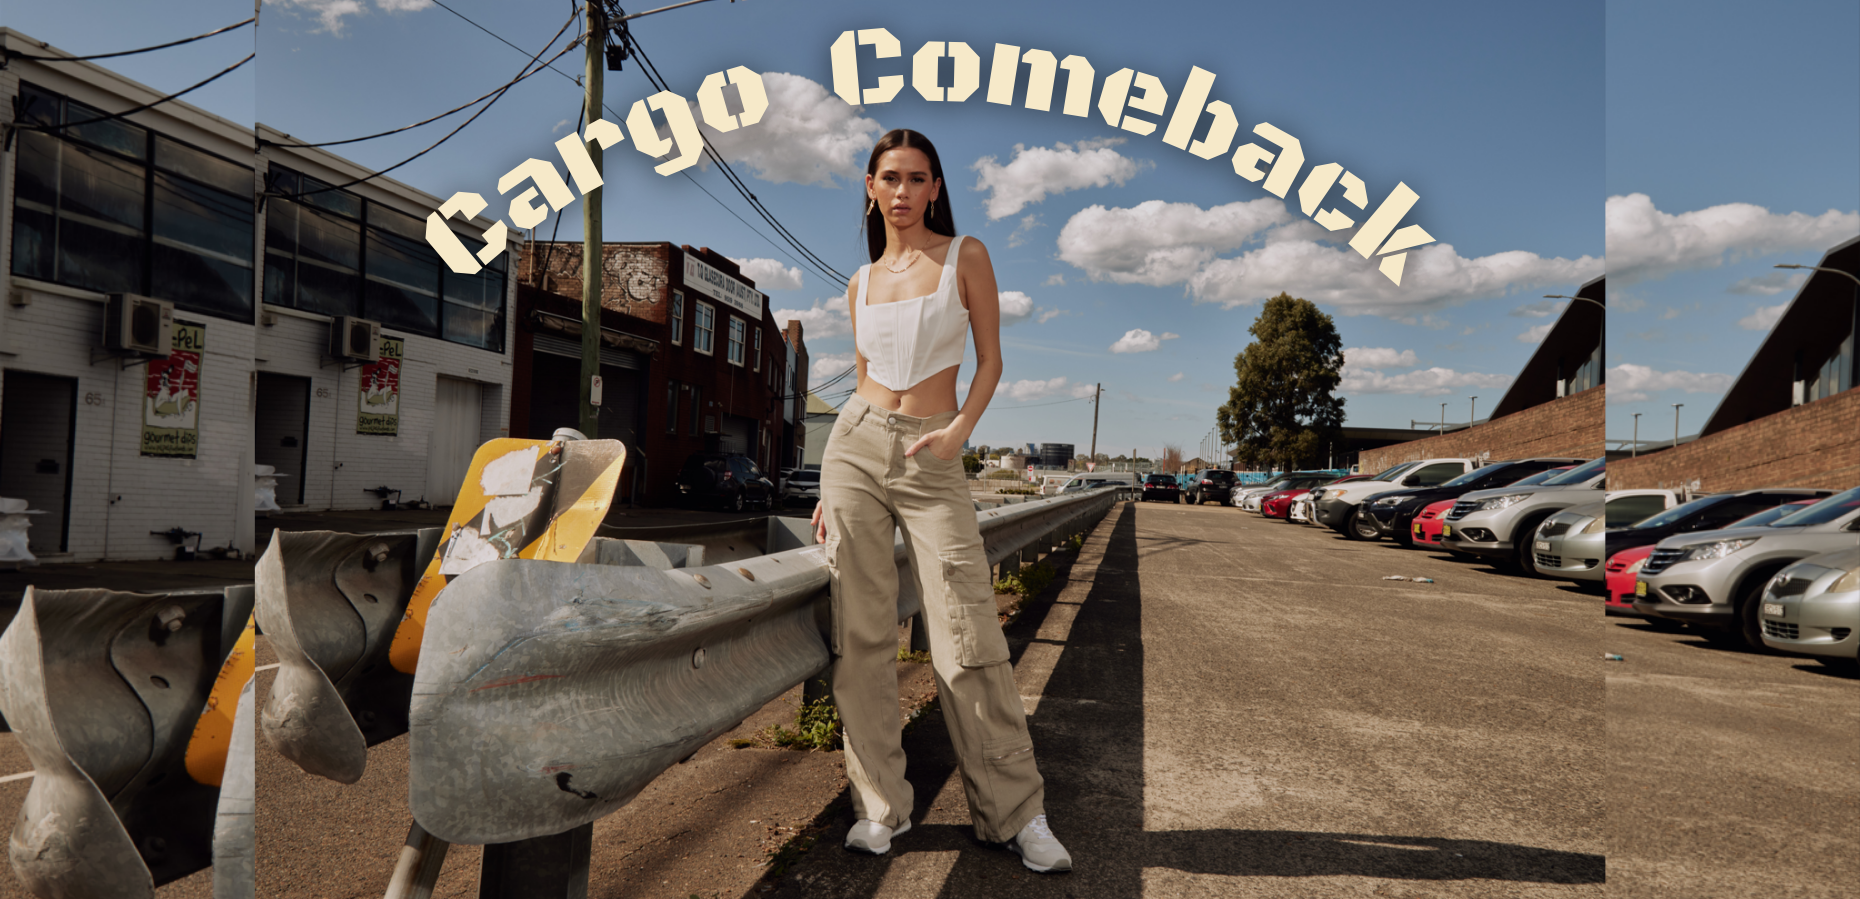 Cargo Comeback, Cargo Pants Blog